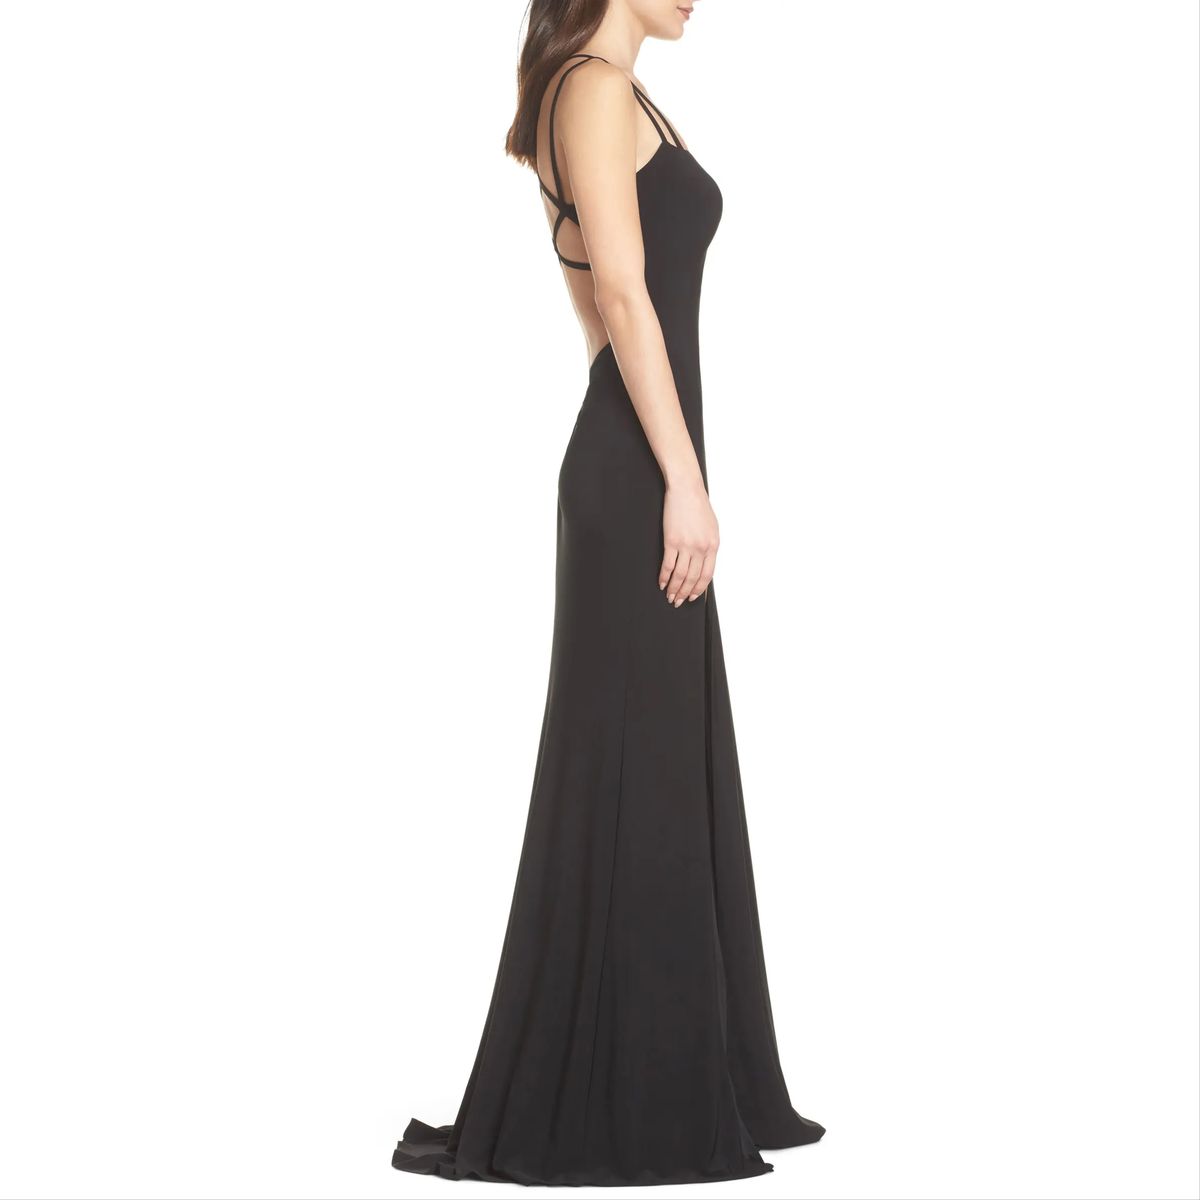 Style 25648 La Femme Size 6 Plunge Black Side Slit Dress on Queenly